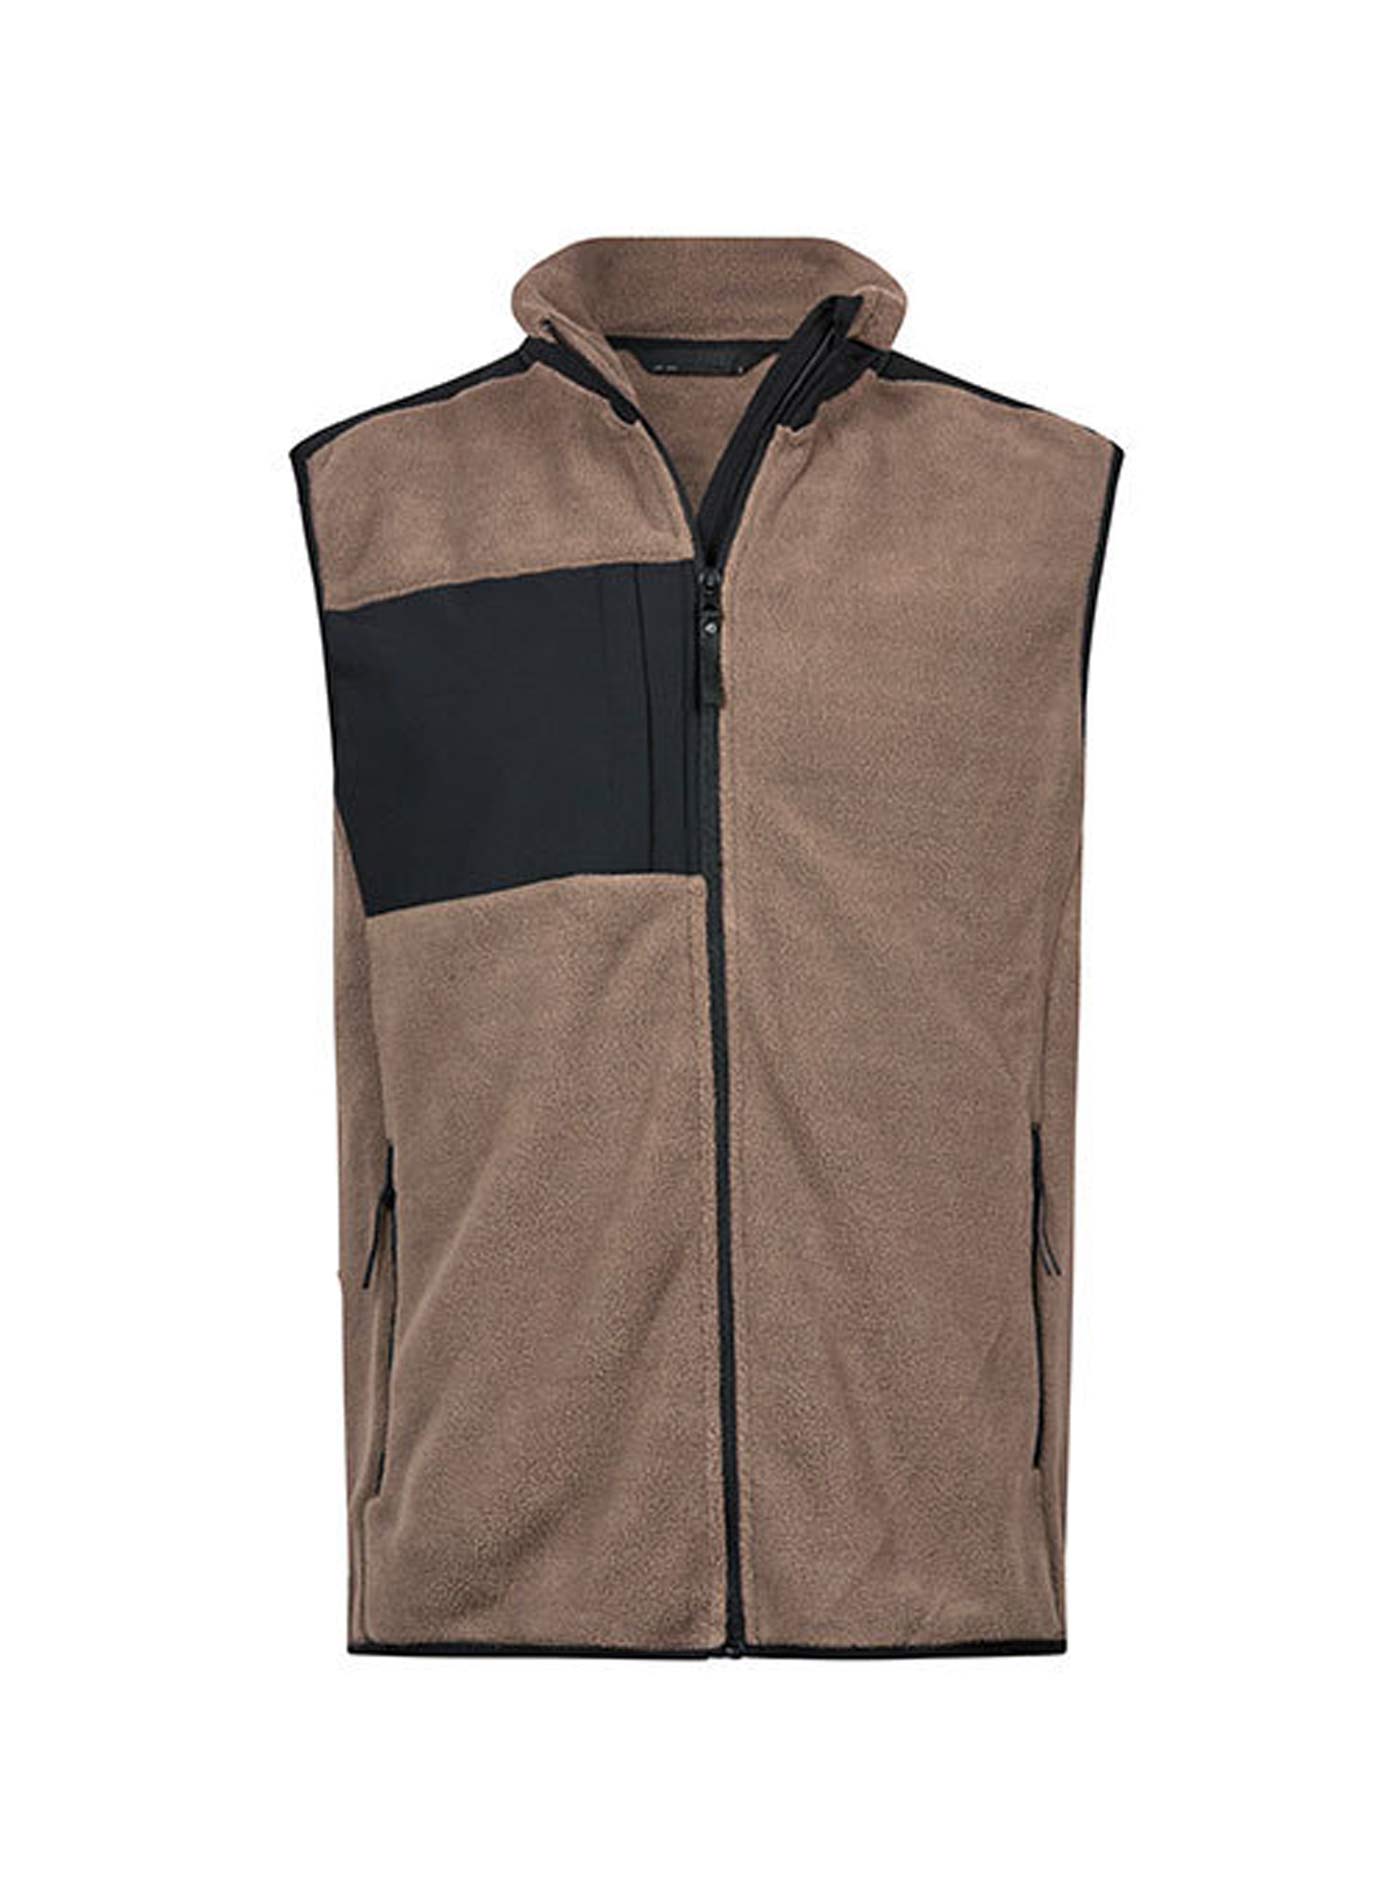 Pánská fleecová vesta Tee Jays Mountain - Hnědá a černá XXL